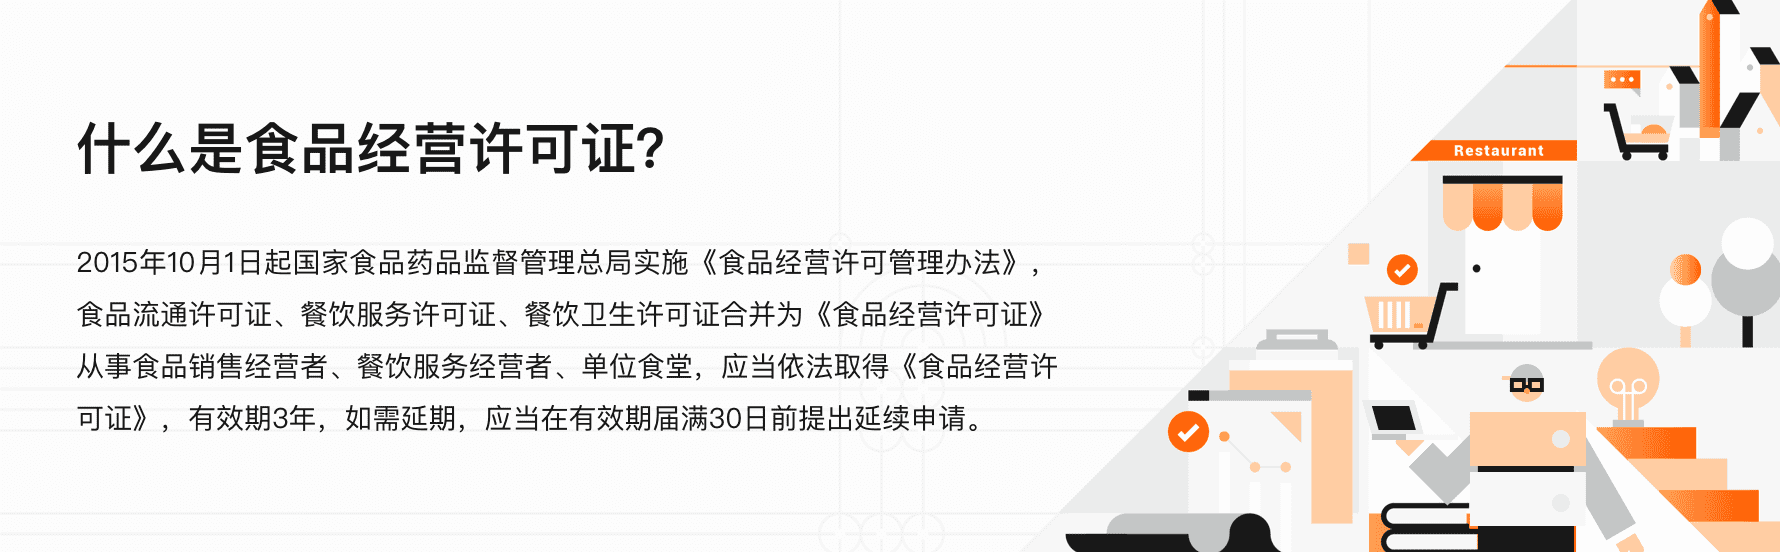 ‘开元棋脾’
广州各区食品谋划许可证管理流程?受理形式?